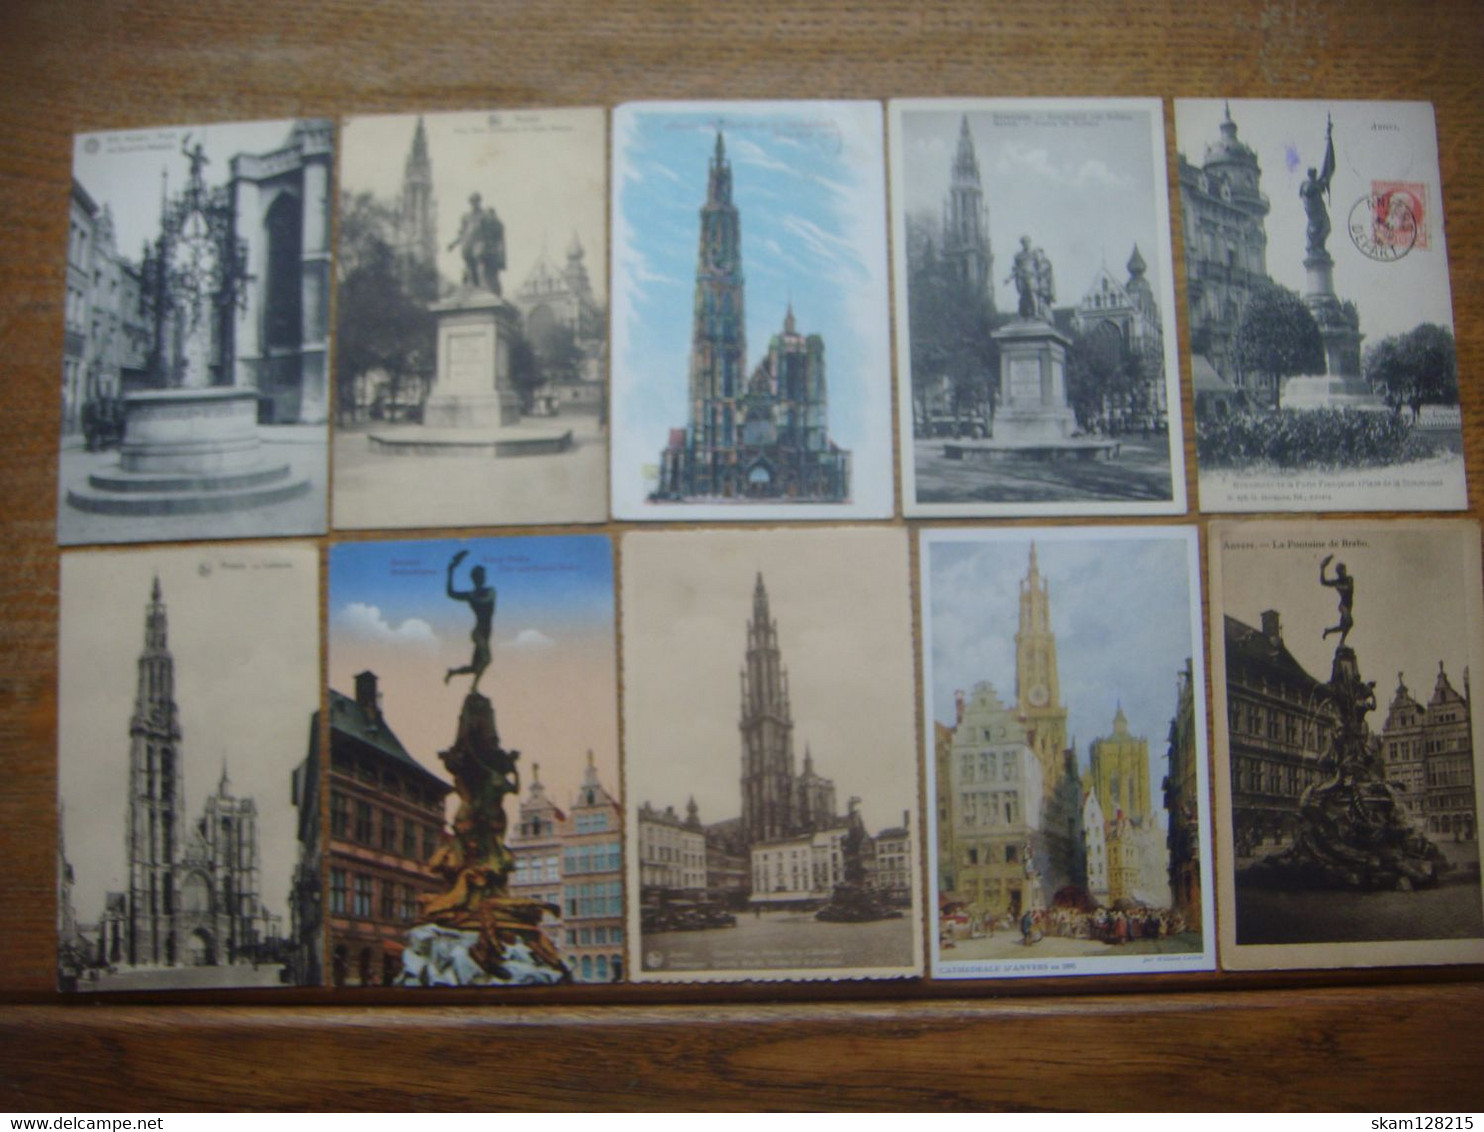 Lot de 121 cartes et 10 snapshots de ANTWERPEN - Anvers ( Super offre )